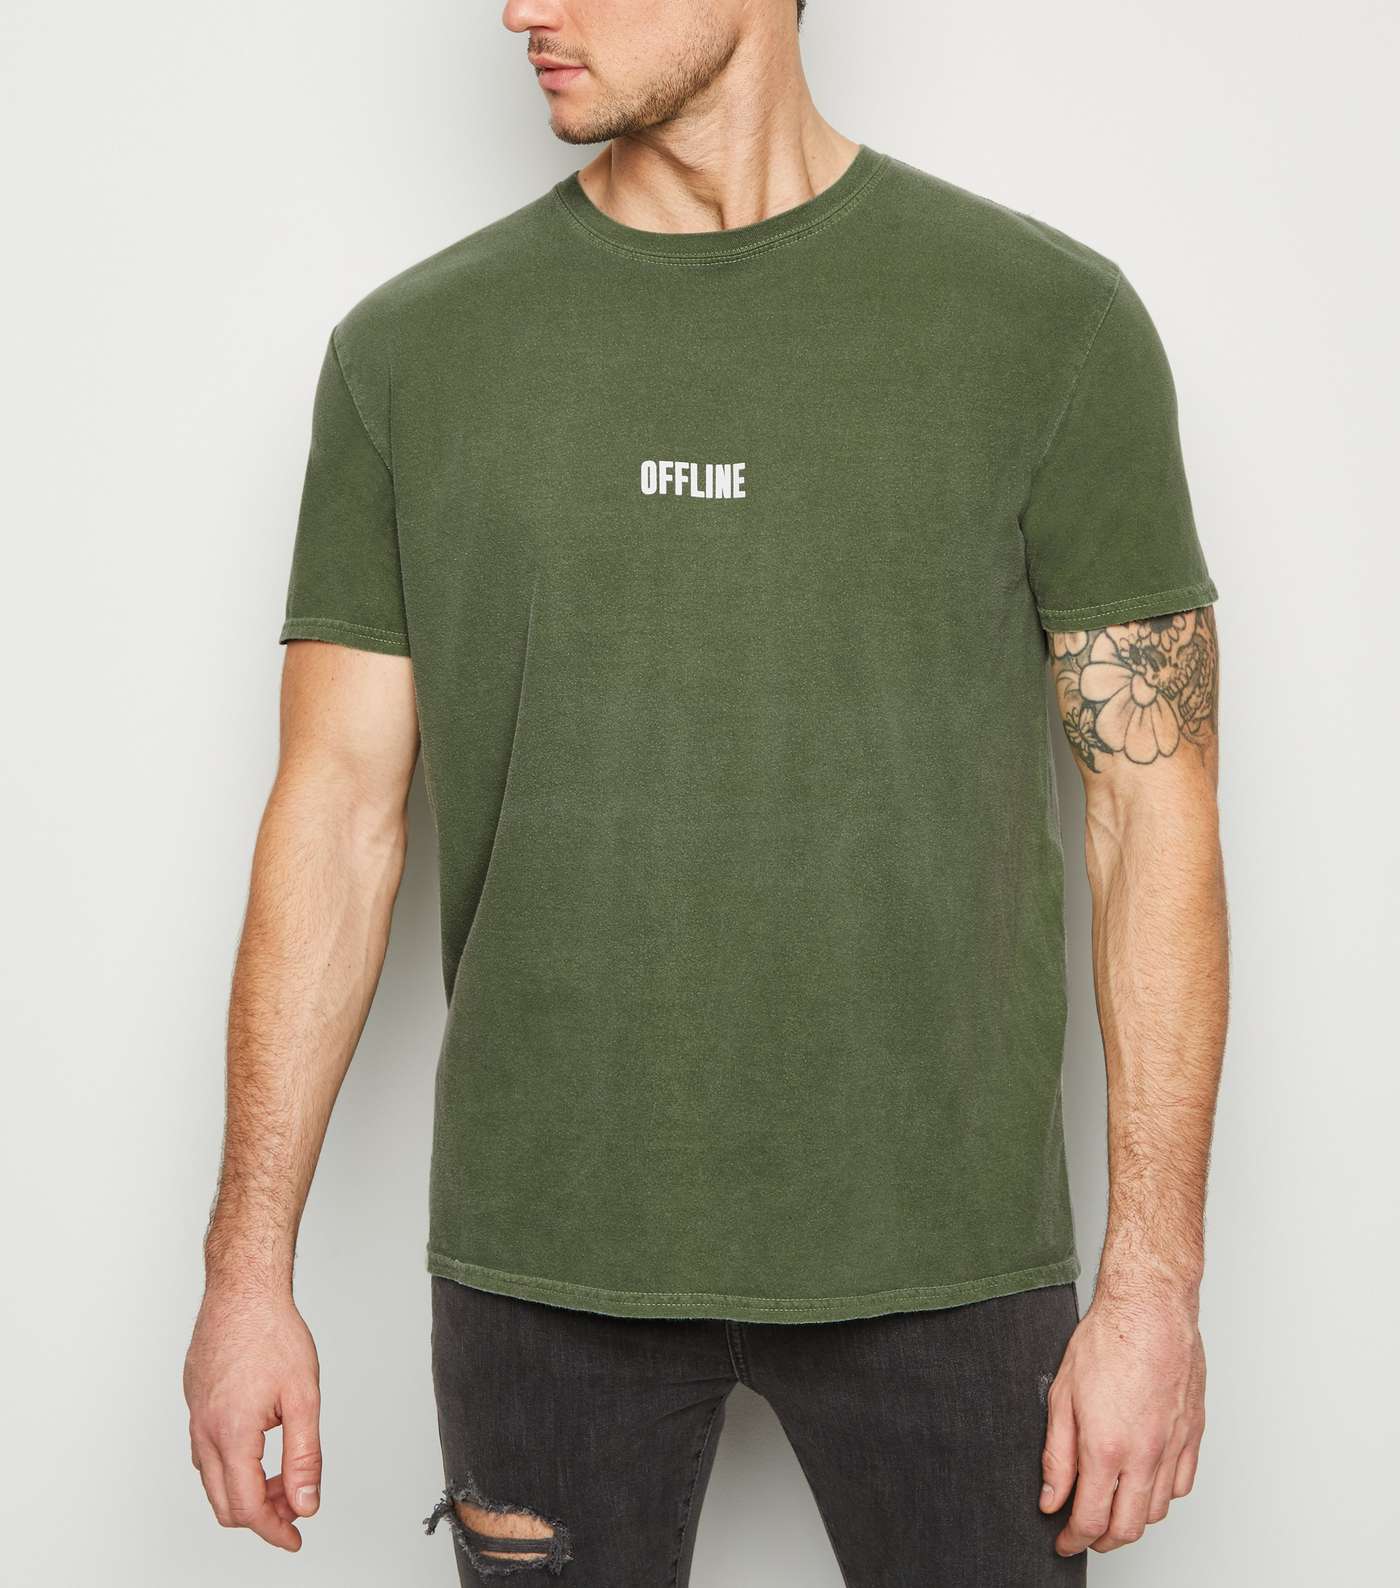 Green Overdyed Offline Slogan T-Shirt